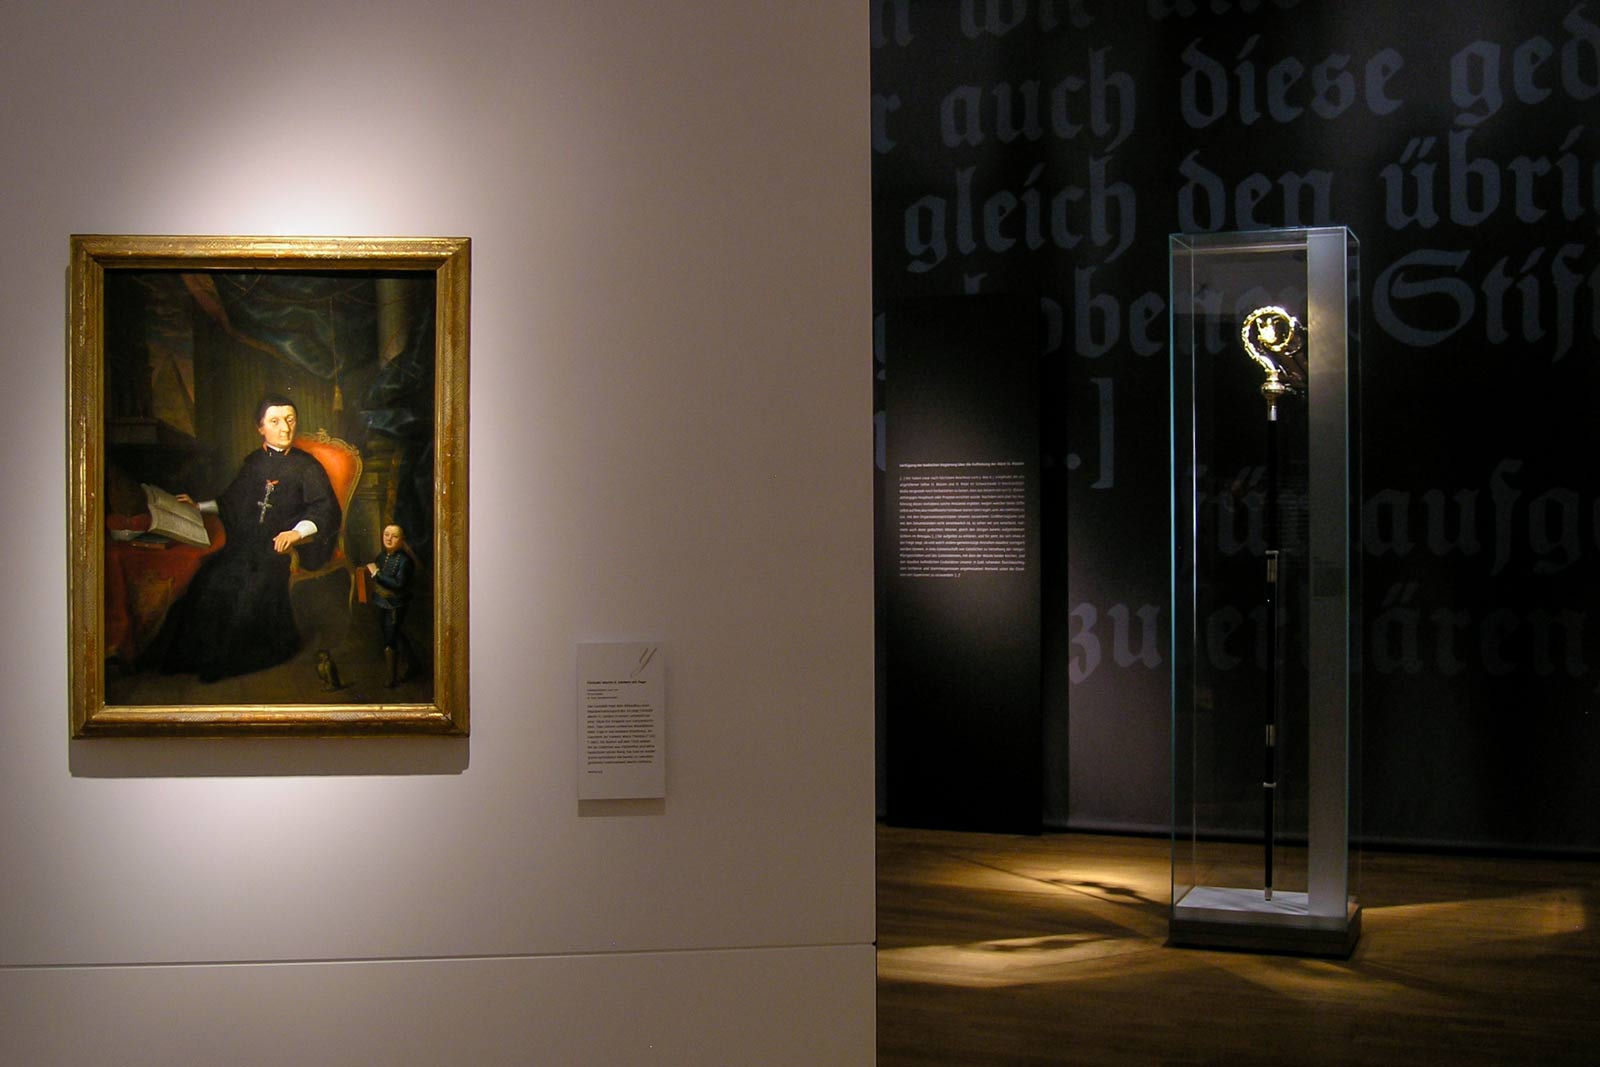 Das Referenzbild für Ausstellungsgestaltung aus der Sonderausstellung „Macht des Wortes“ zeigt eine Rauminszenierung mit Exponatlicht.